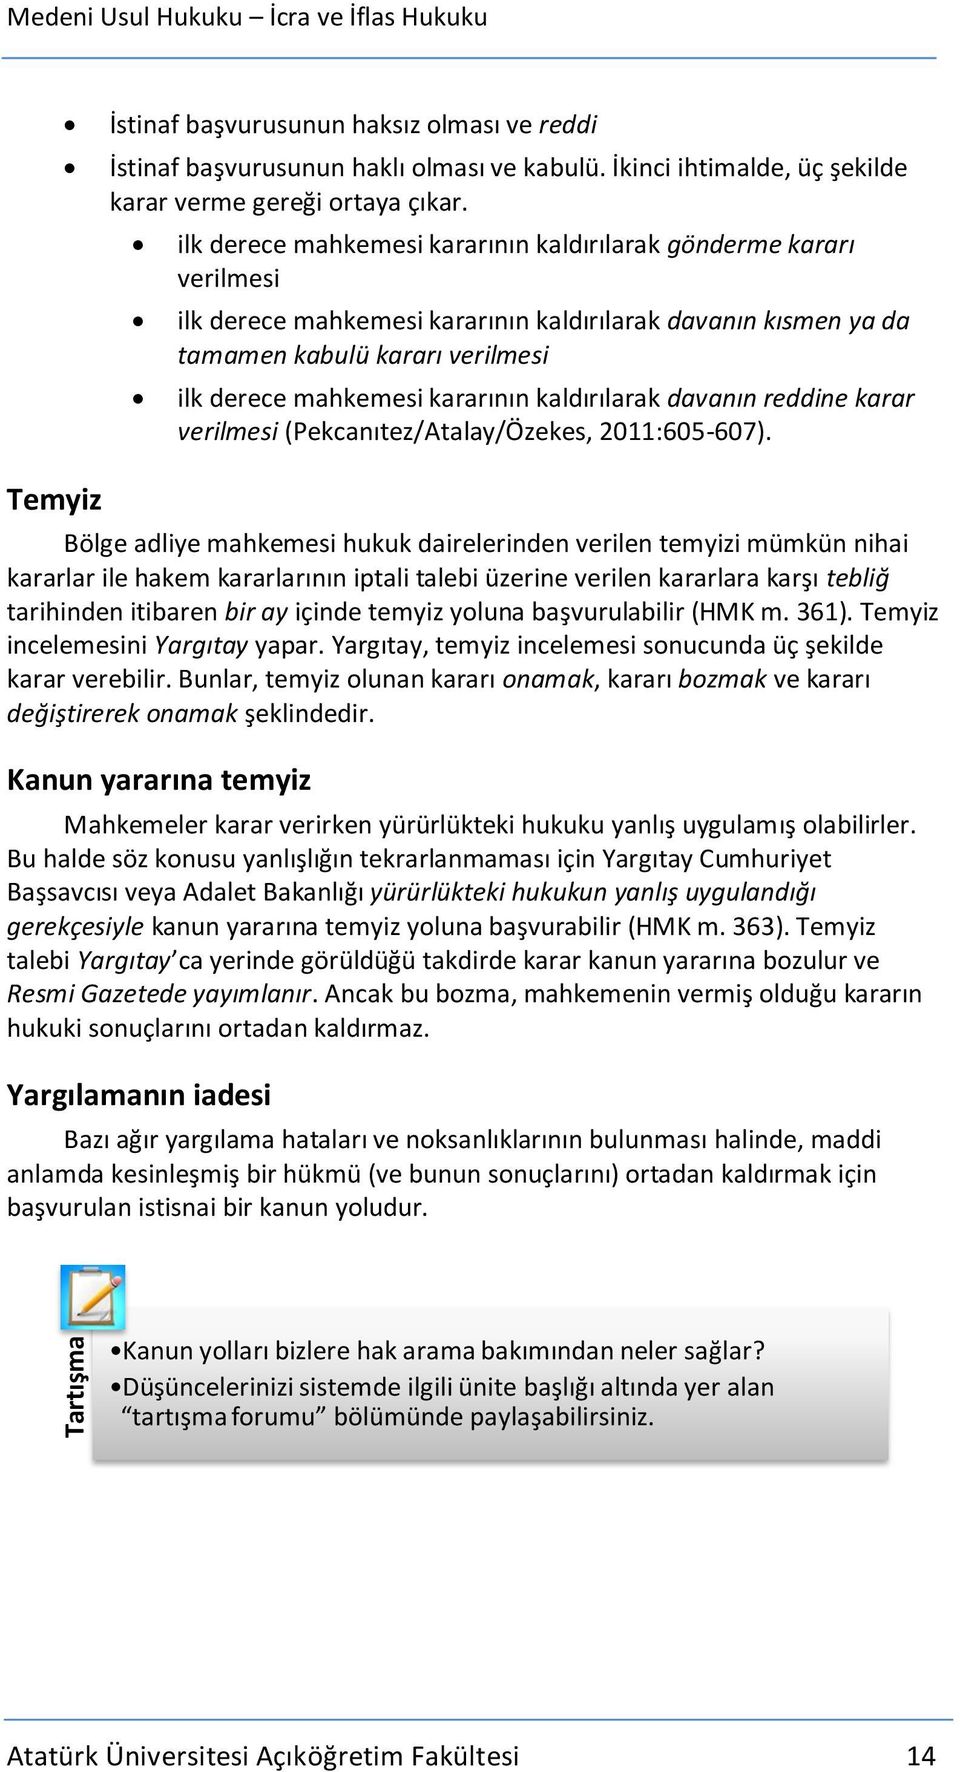 kaldırılarak davanın reddine karar verilmesi (Pekcanıtez/Atalay/Özekes, 2011:605-607).